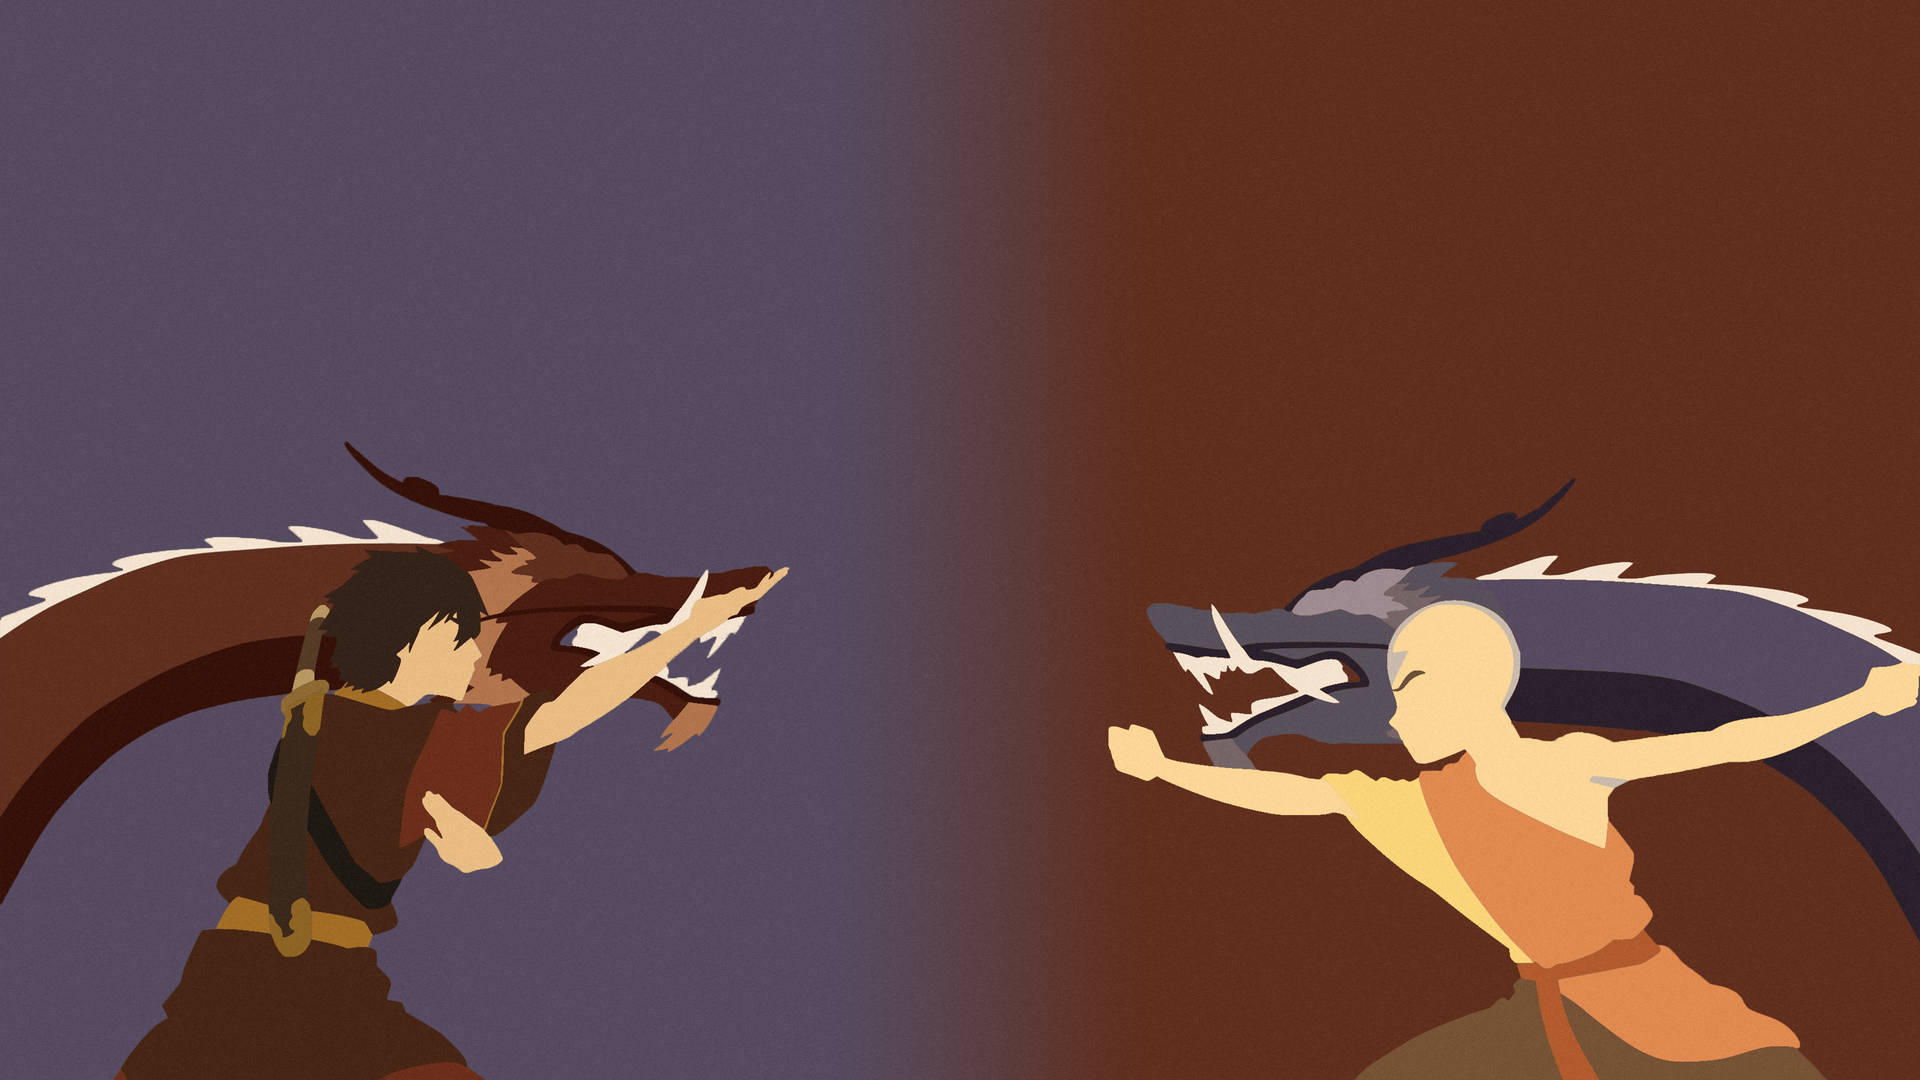 Zuko Versus Aang With Dragons Background